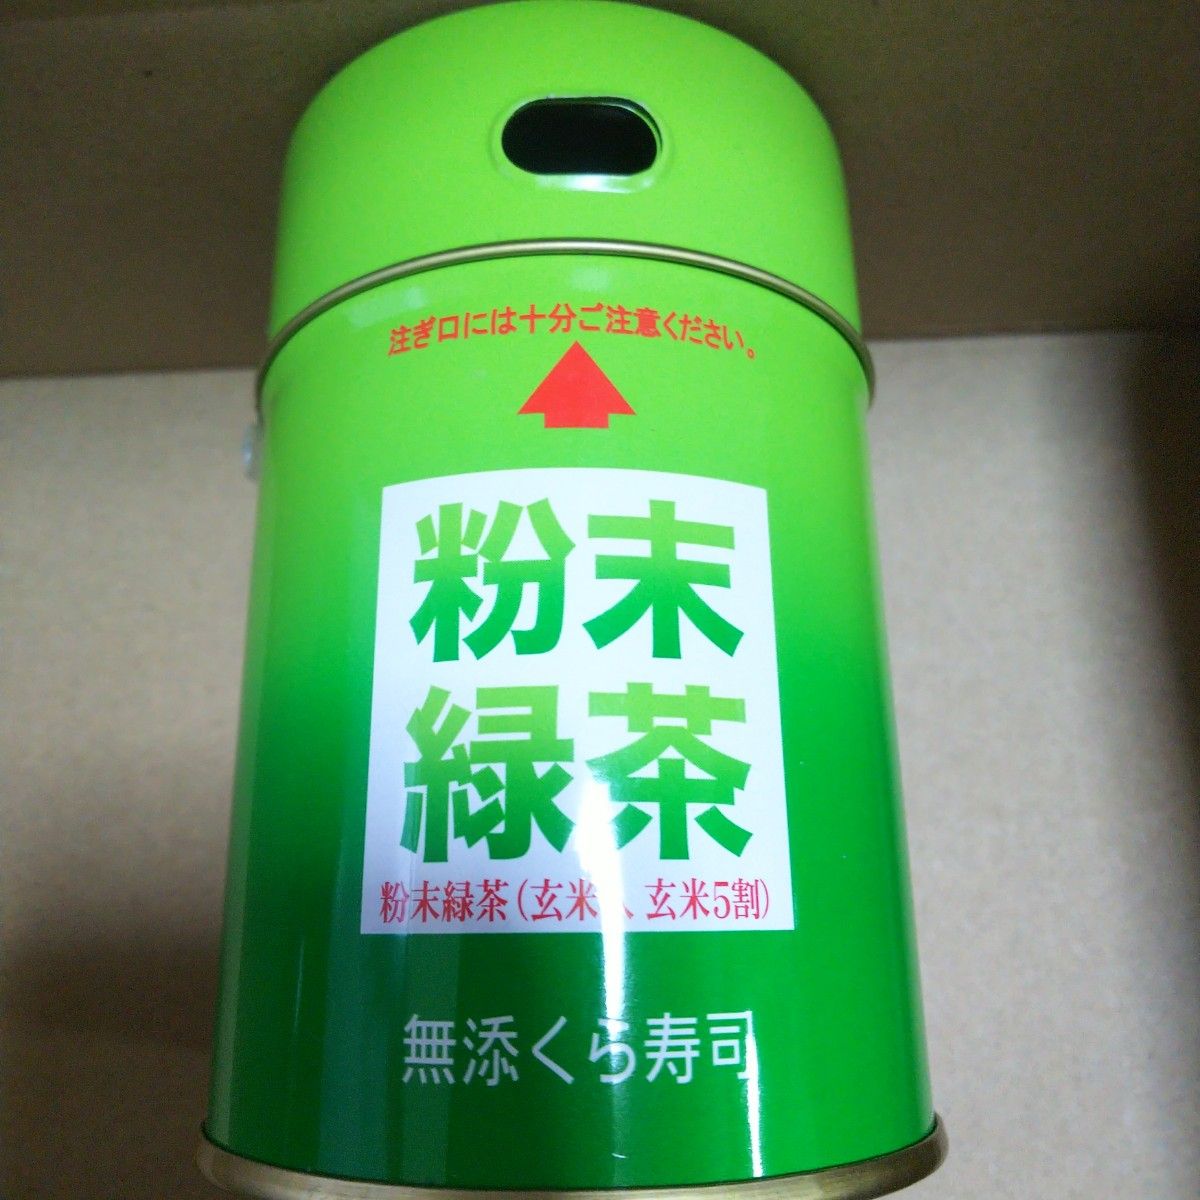 4本組 粉末緑茶缶(中身はありません)